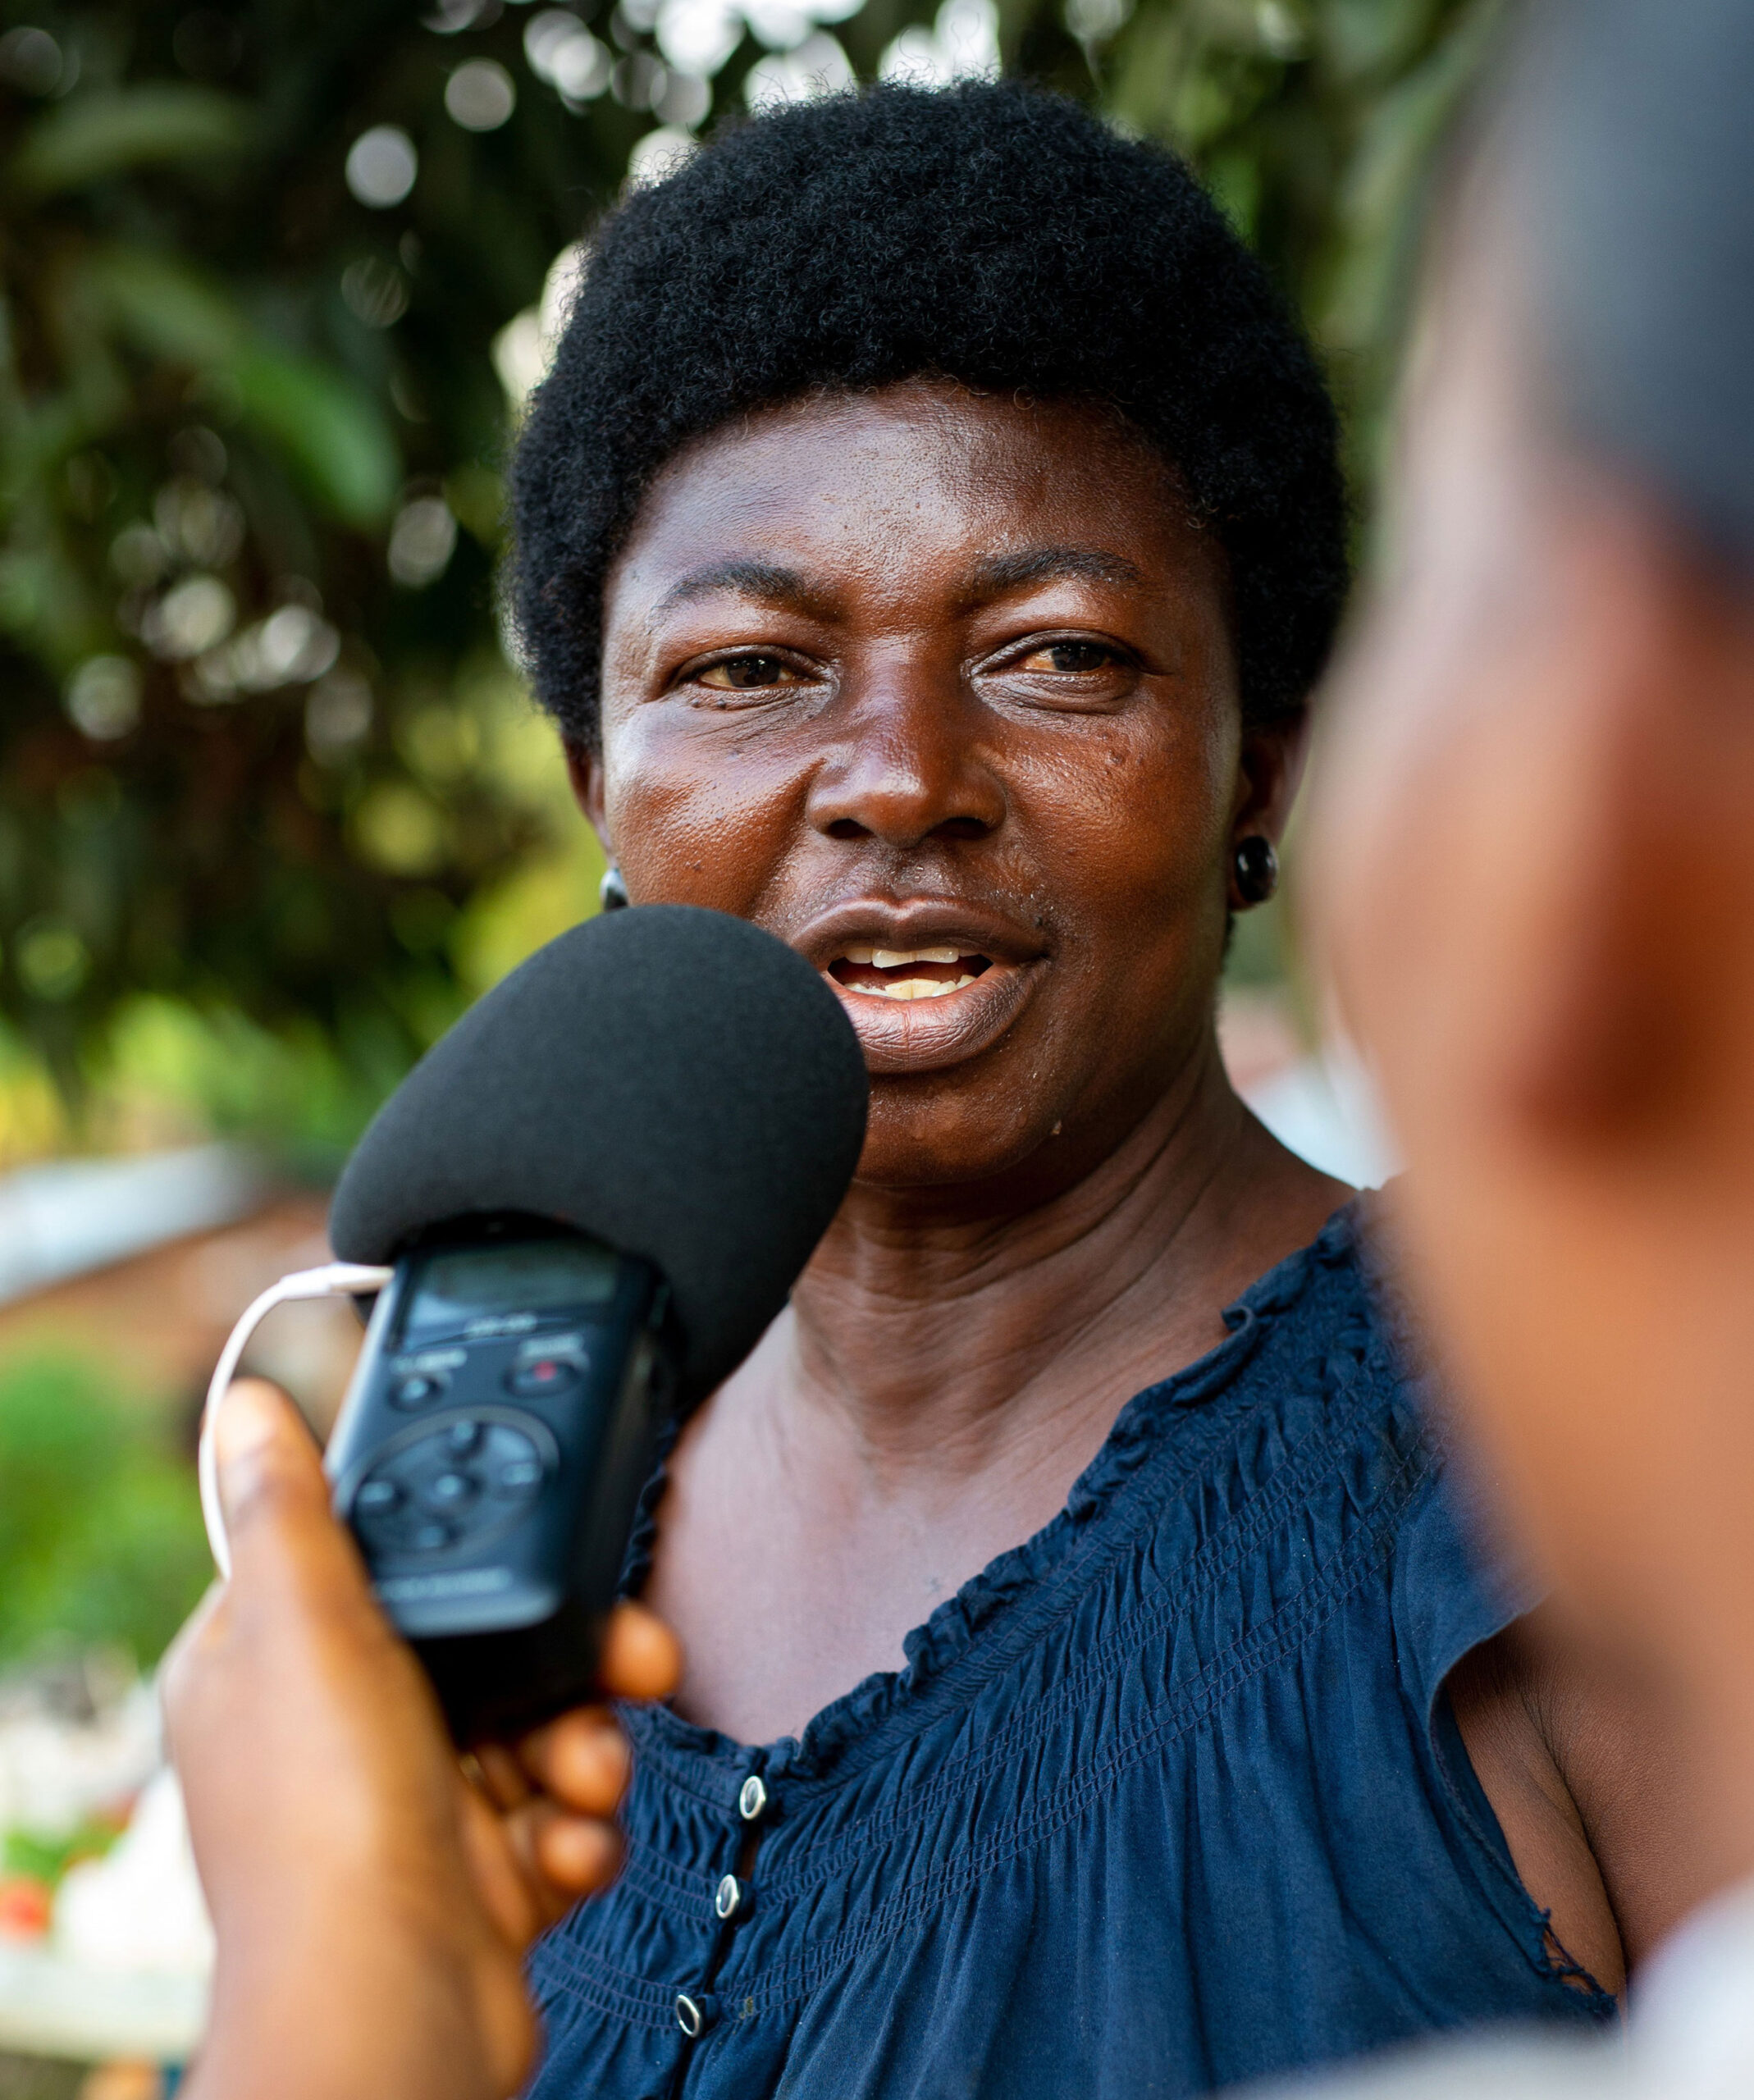 Une auditrice s’exprime au micro d’un•e reporter en République démocratique du Congo. © Gwenn Dubourthoumieu / Fondation Hirondelle.